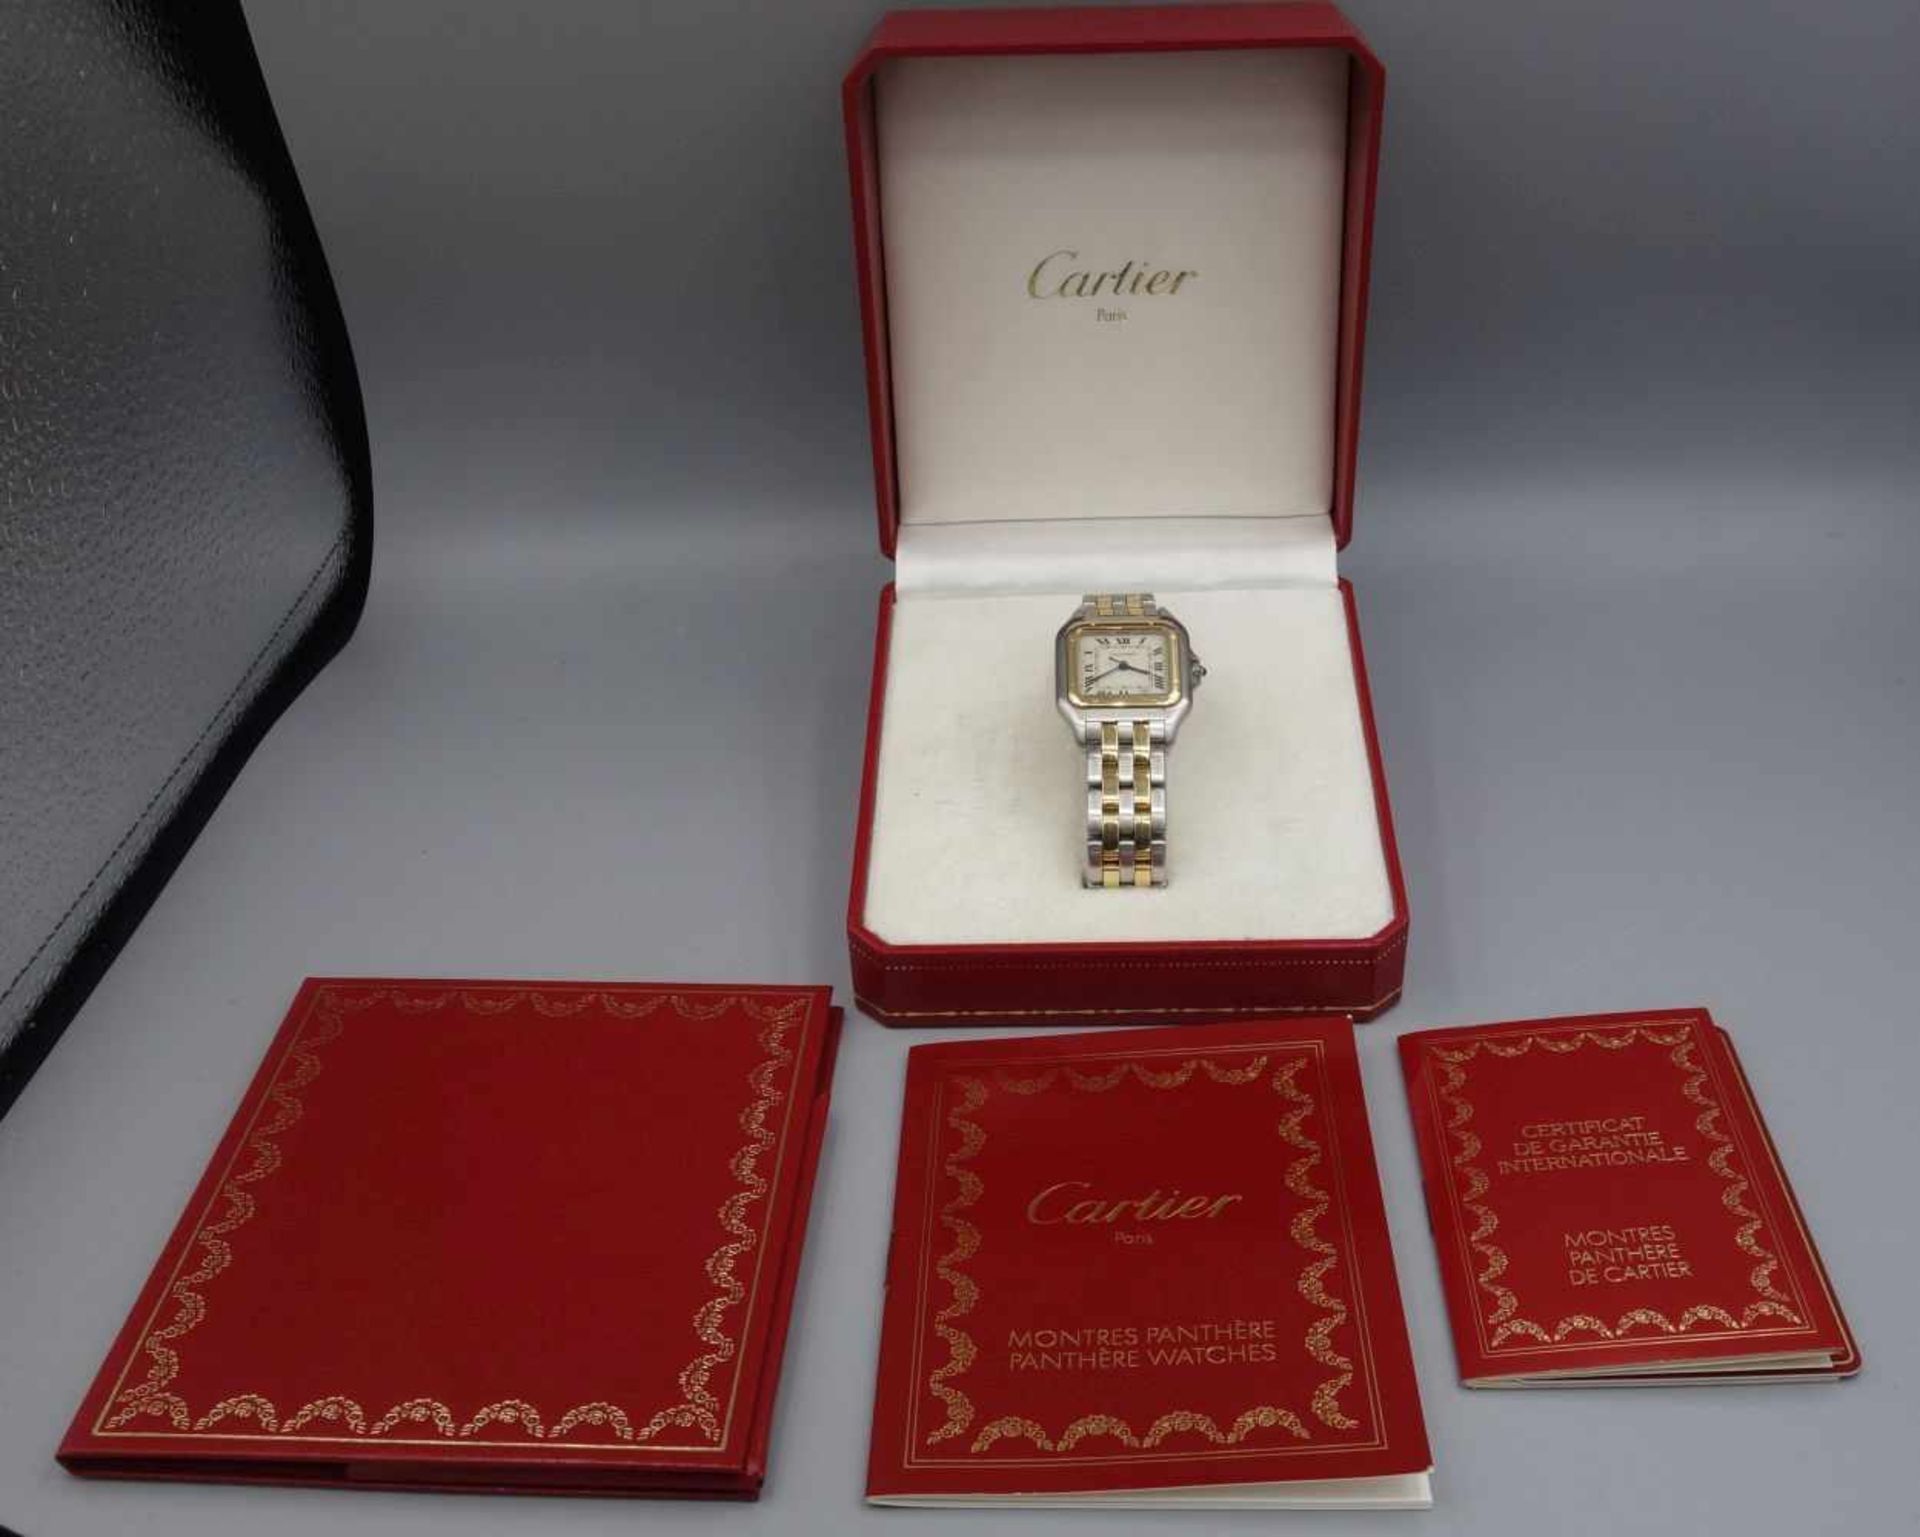 VINTAGE ARMBANDUHR - Cartier "Panthere" / wristwatch, Mitte 20. Jh., Quartz-Uhr, Manufaktur - Bild 7 aus 7